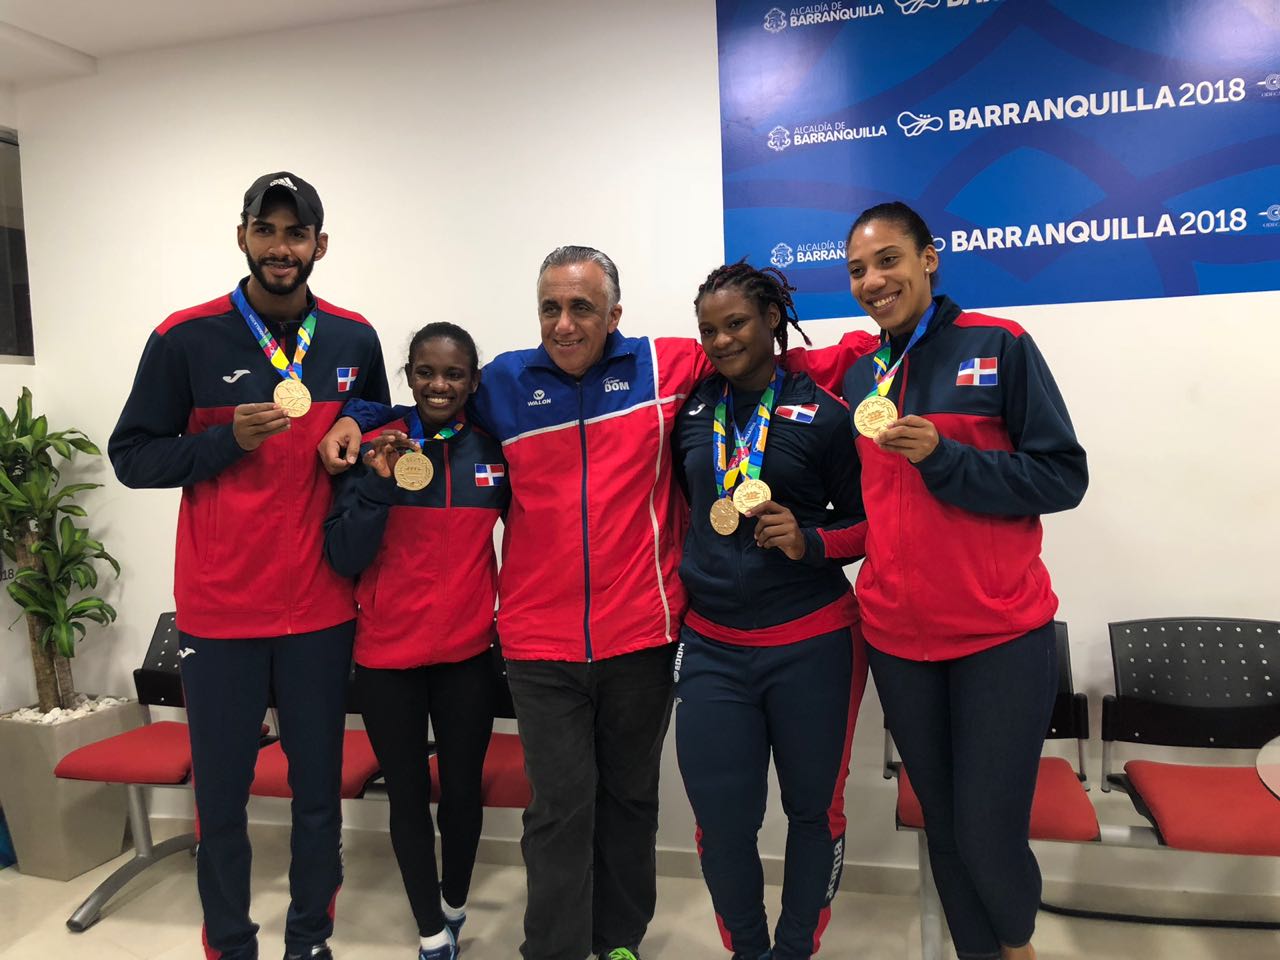 El presidente del Comité Olímpico Dominicano Luisin Mejía junto a Yamilet Pena, Moisés Hernández y Khaterine Rodríguez, ganadores de medallas de oro en sus disciplinas en los los XXIII Juegos Centroamericanos y del Caribe.